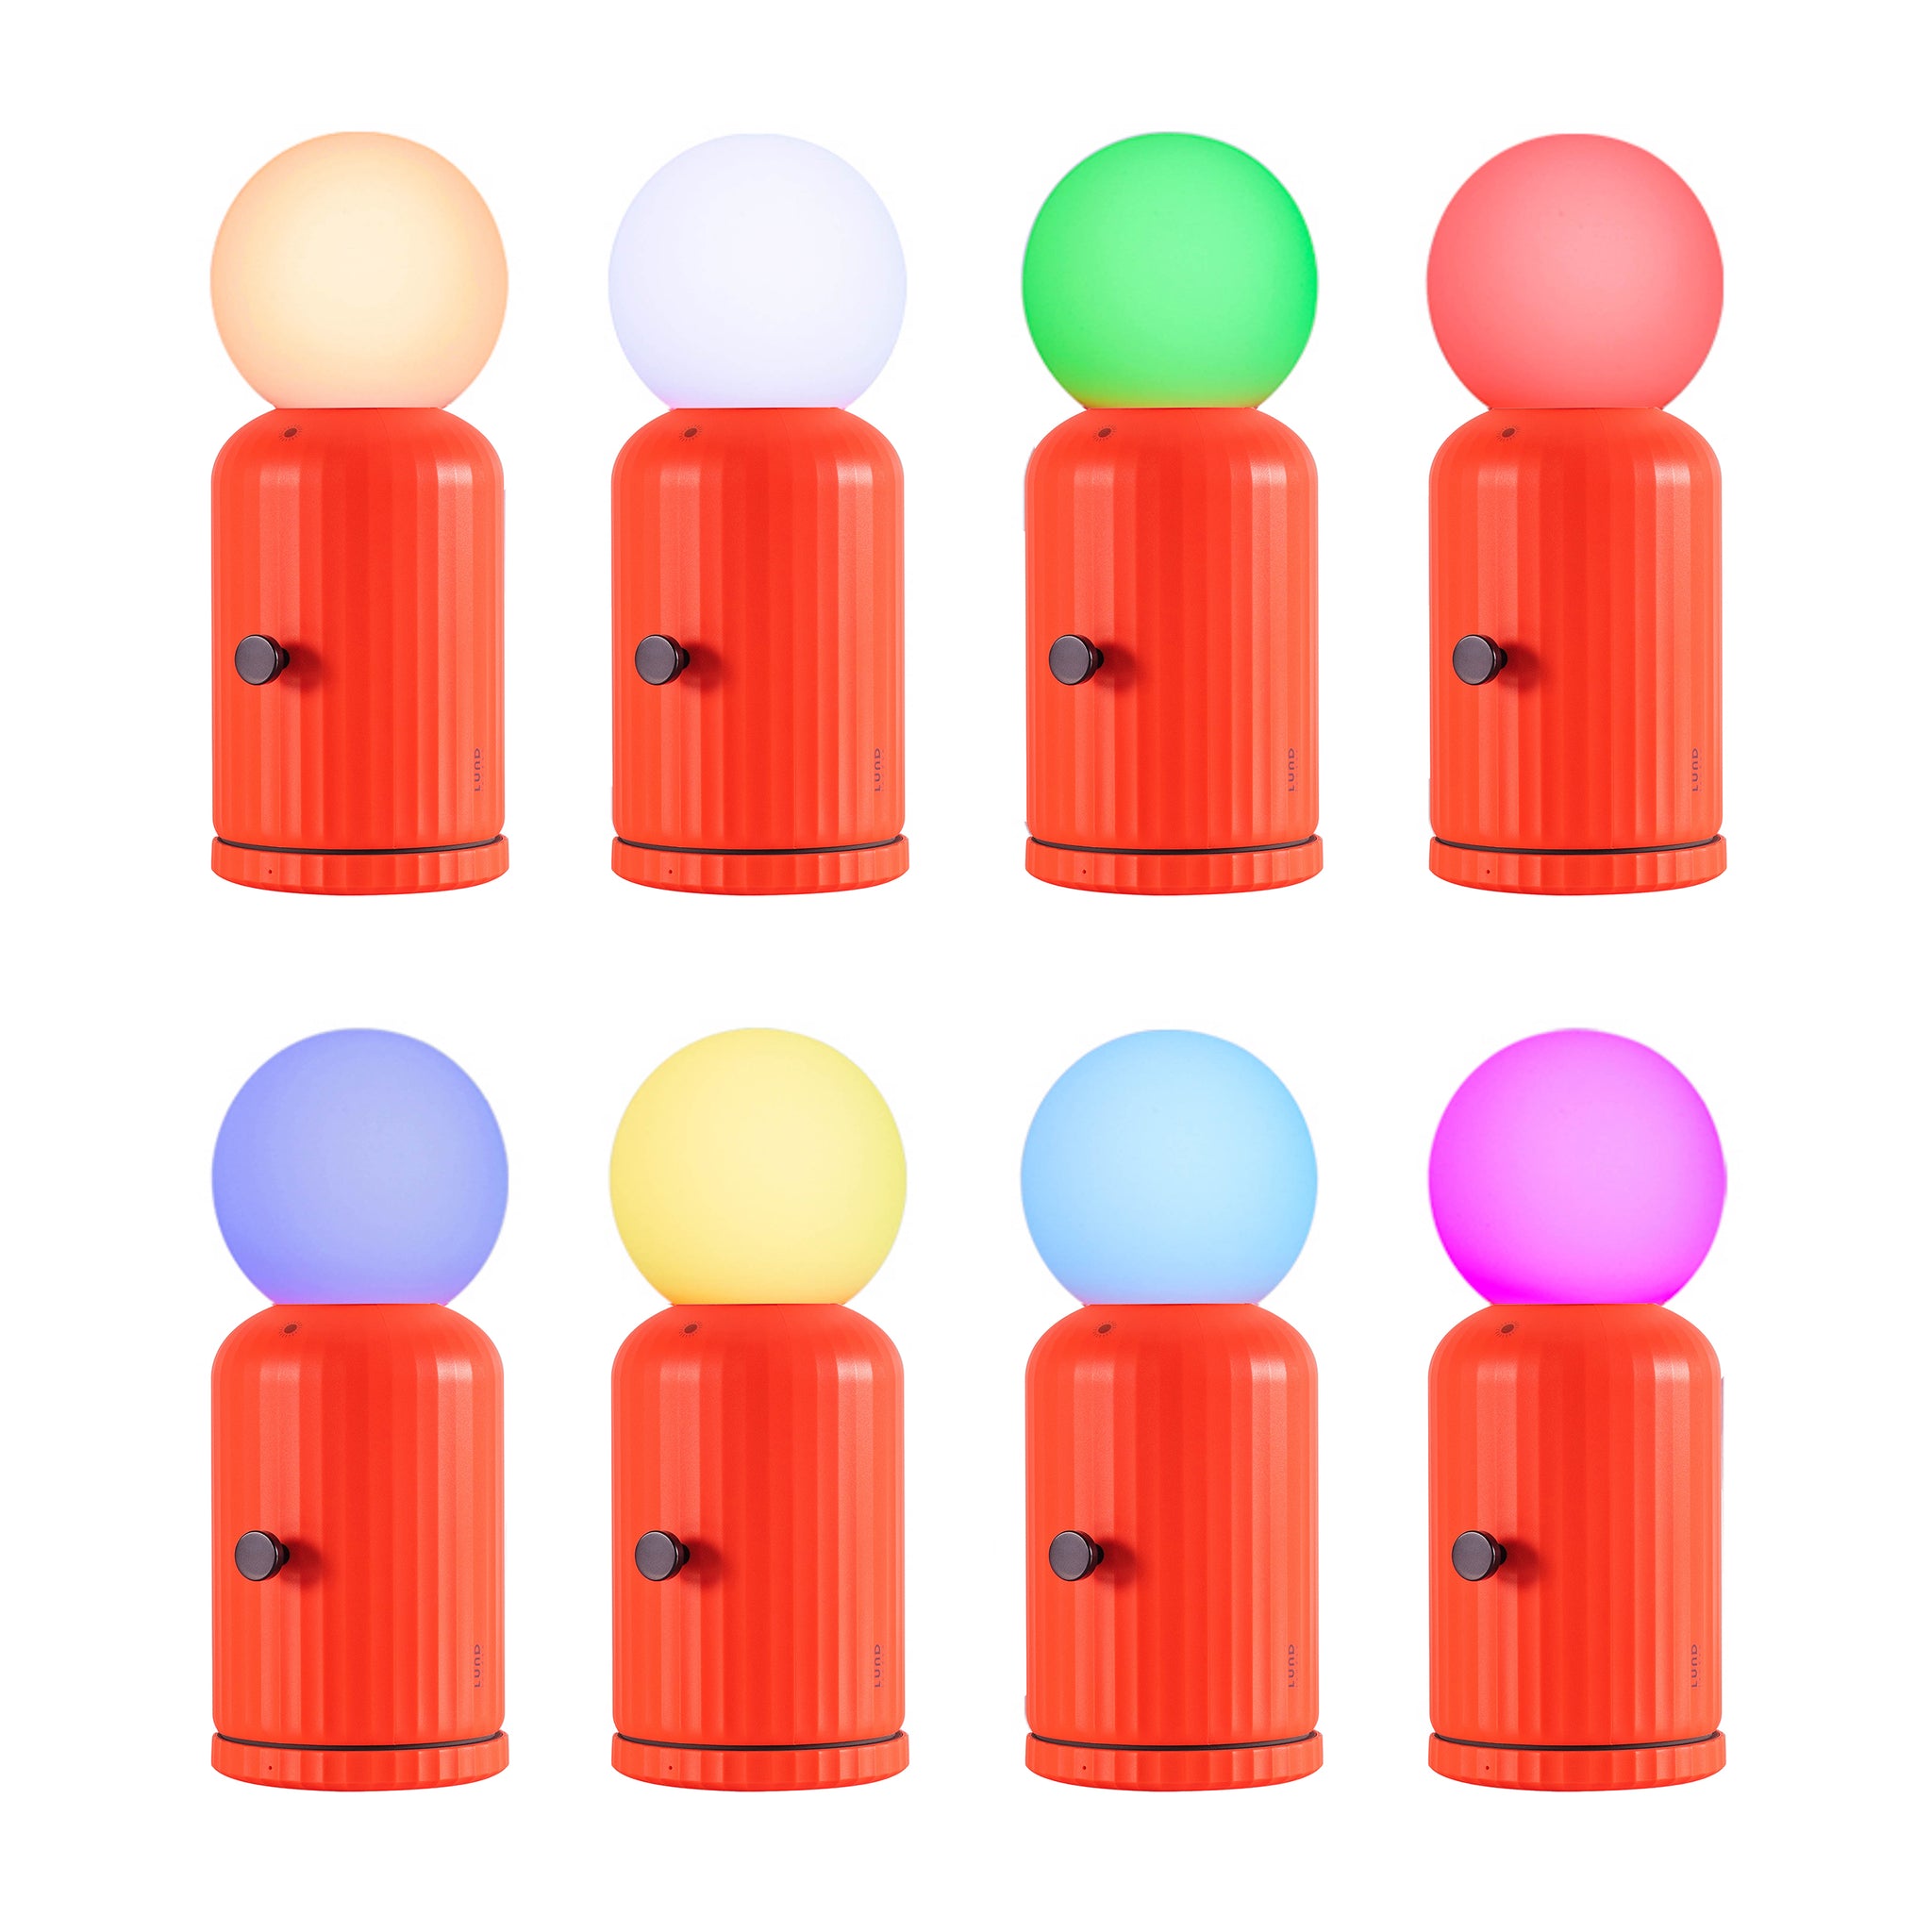 Skittle Oplaadbare Lamp Coral│Lund London│Draadloos│afbeelding 8 verschillende kleuren